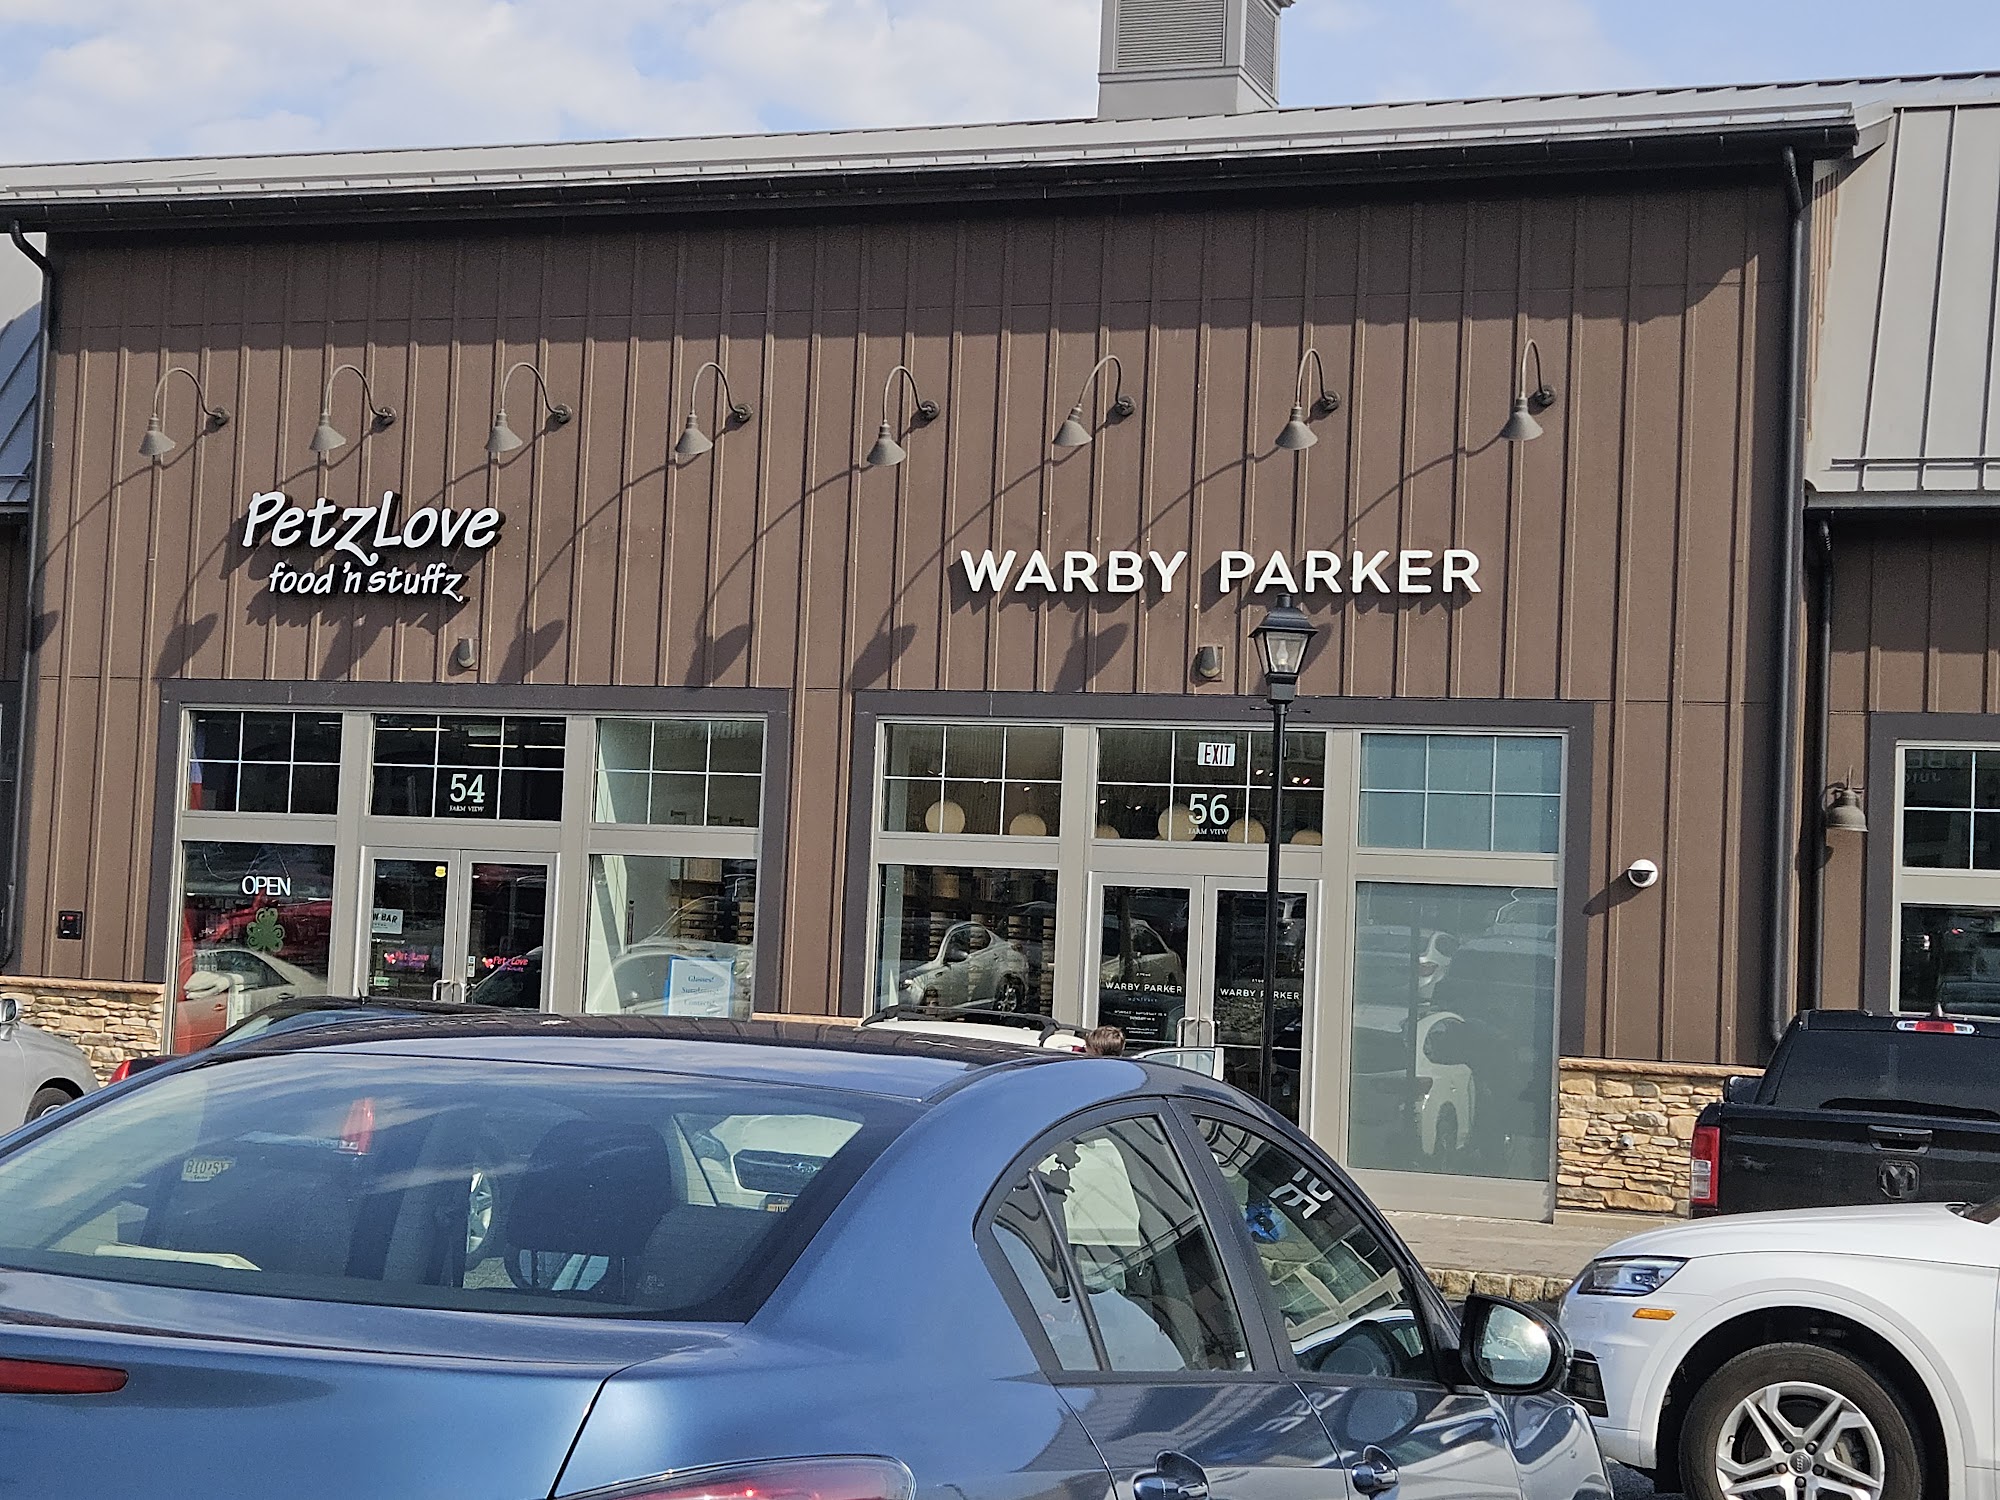 Warby Parker The Shoppes at DePiero Farm 56 Farm Vw D-56, Montvale New Jersey 07645